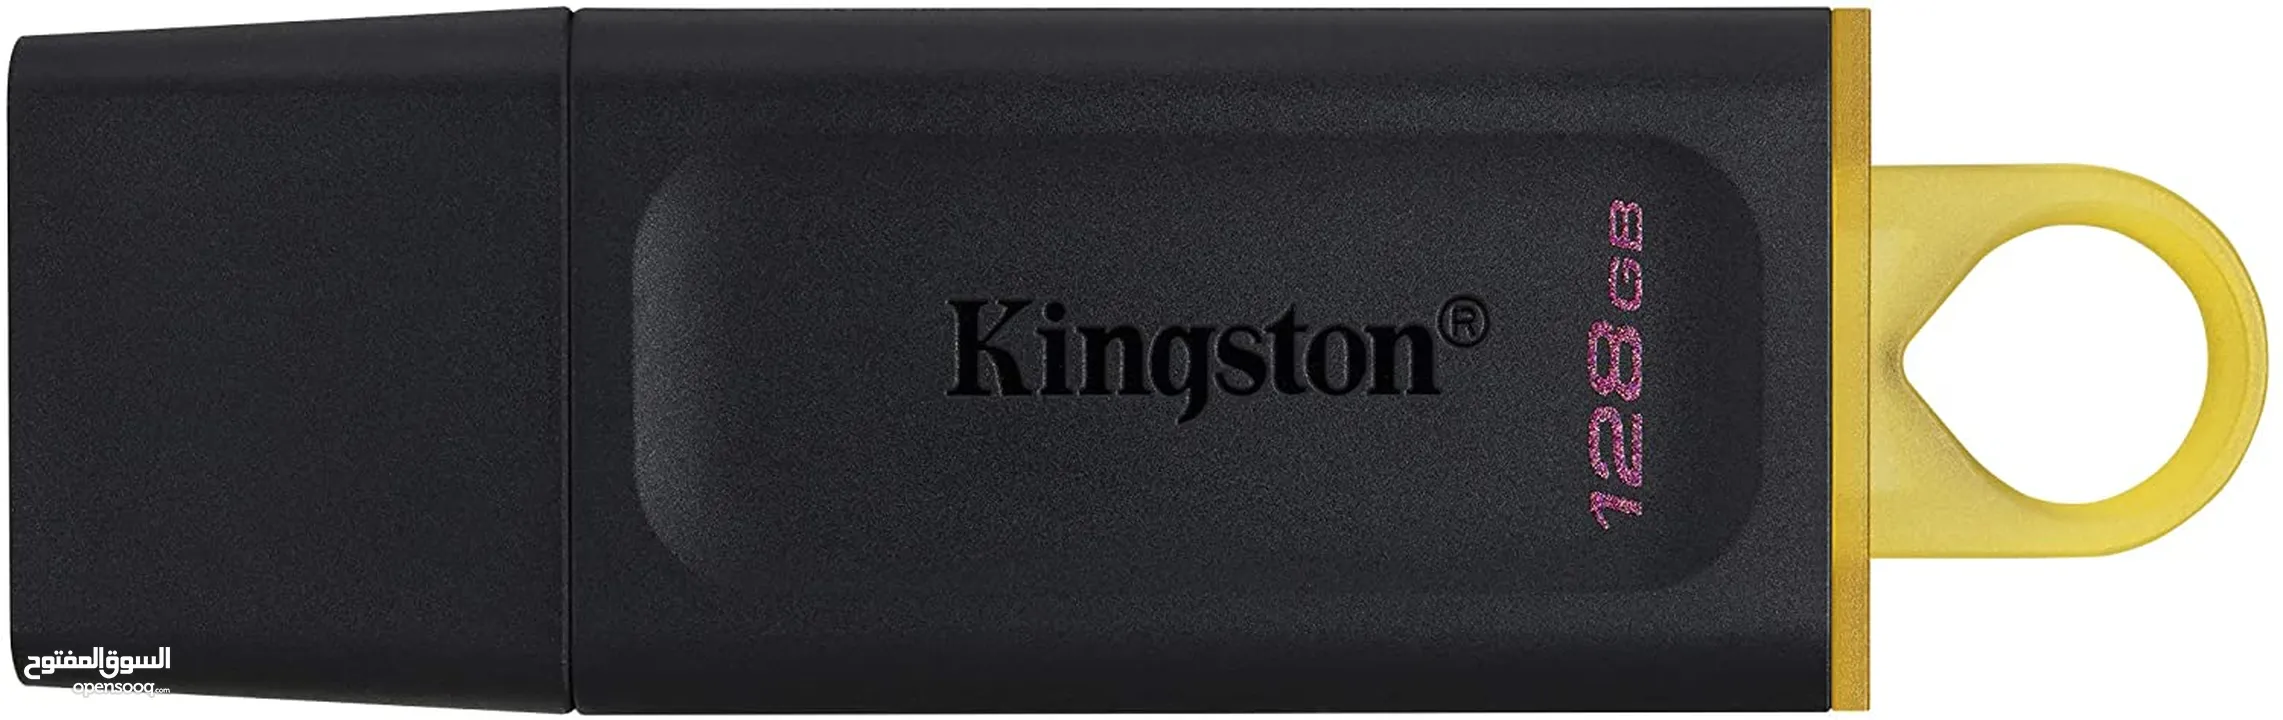 FLASH USB3.2 KINGSTON DATA TRAVELER 128GB فلاشة ميموري 128 جيجا  لتخزين معلوماتك بامان 